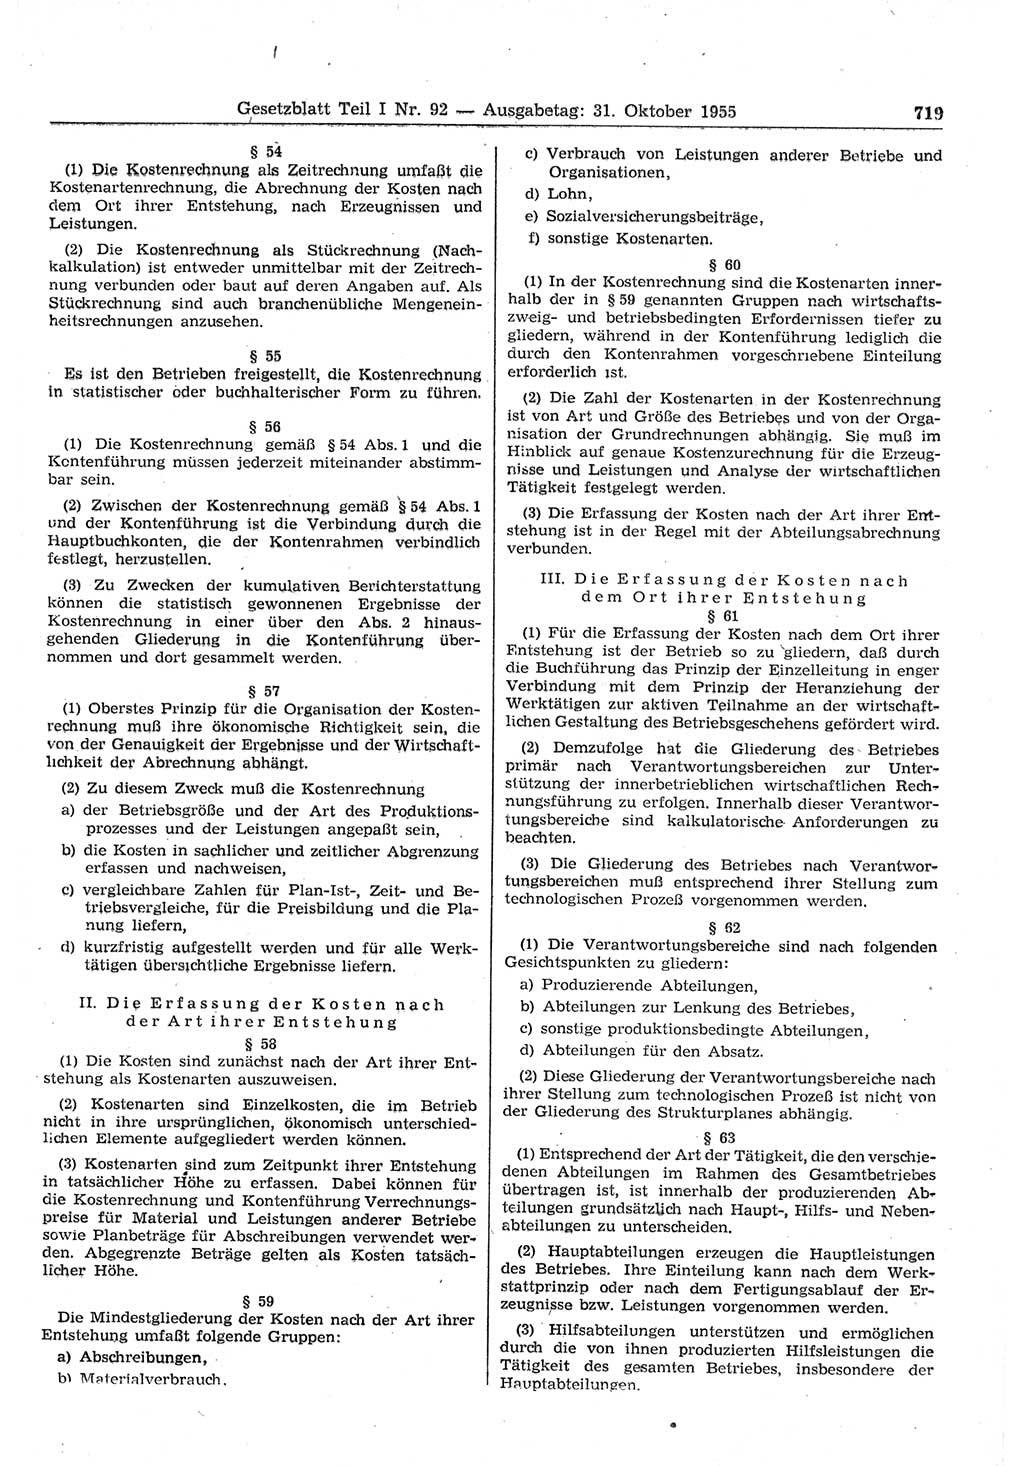 Gesetzblatt (GBl.) der Deutschen Demokratischen Republik (DDR) Teil Ⅰ 1955, Seite 719 (GBl. DDR Ⅰ 1955, S. 719)